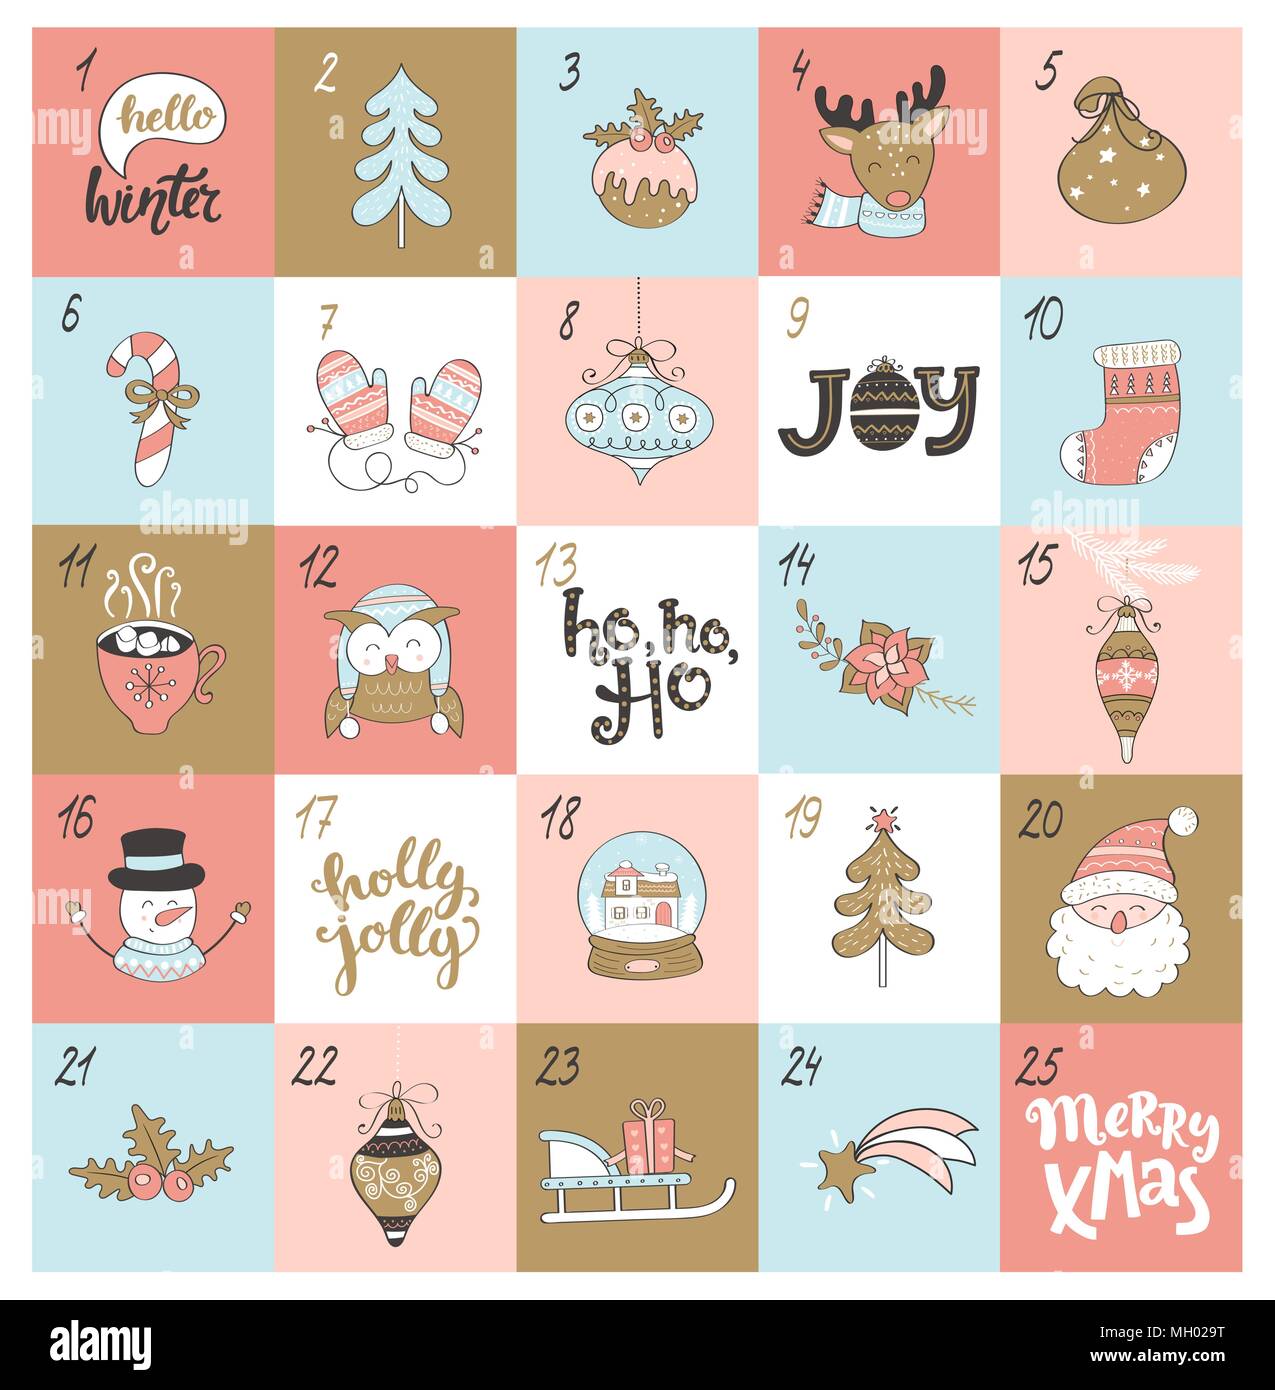 Weihnachten Adventskalender mit verschiedenen weihnachtlichen Symbole. Vector Illustration. Stock Vektor